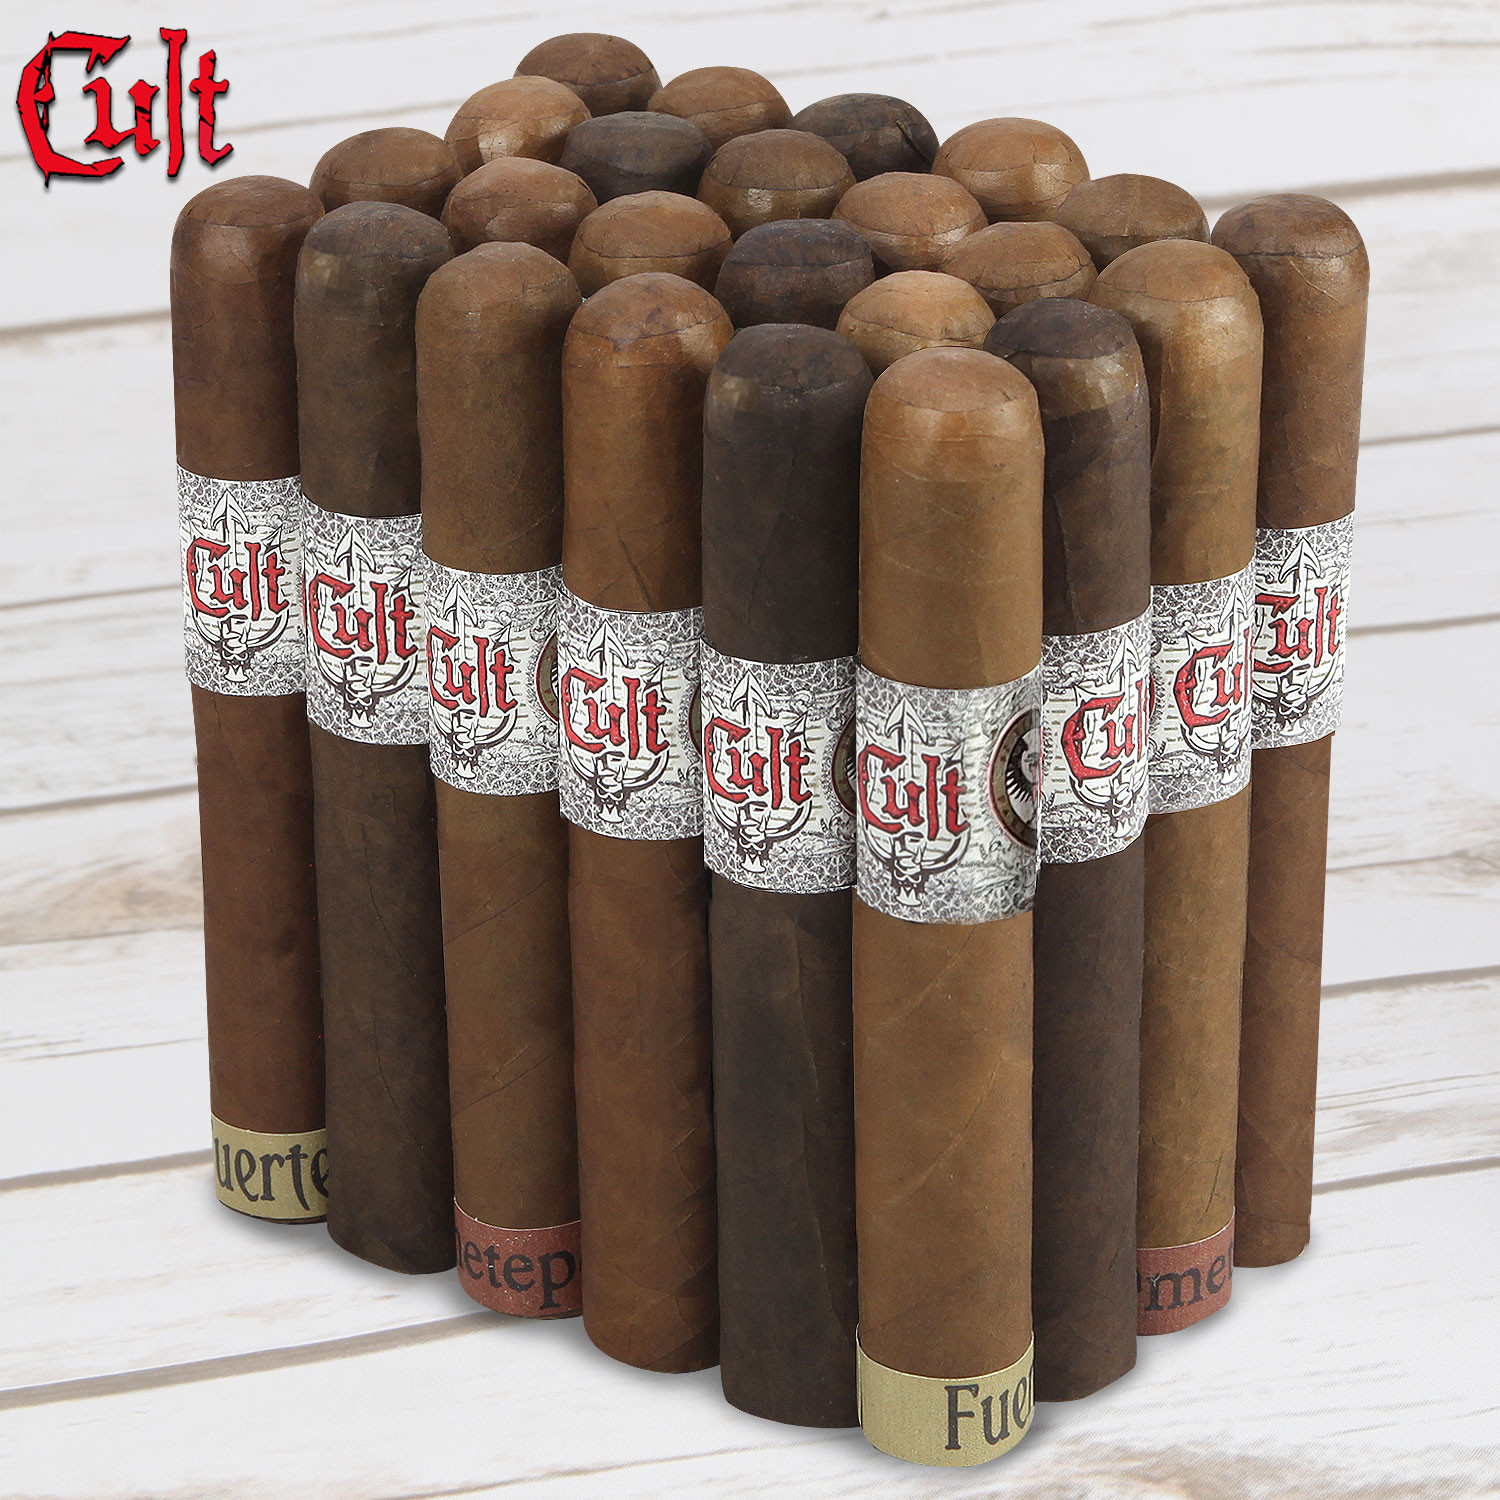 $2 Cult Nicaraguan Wack Pack combos - Cigar Page